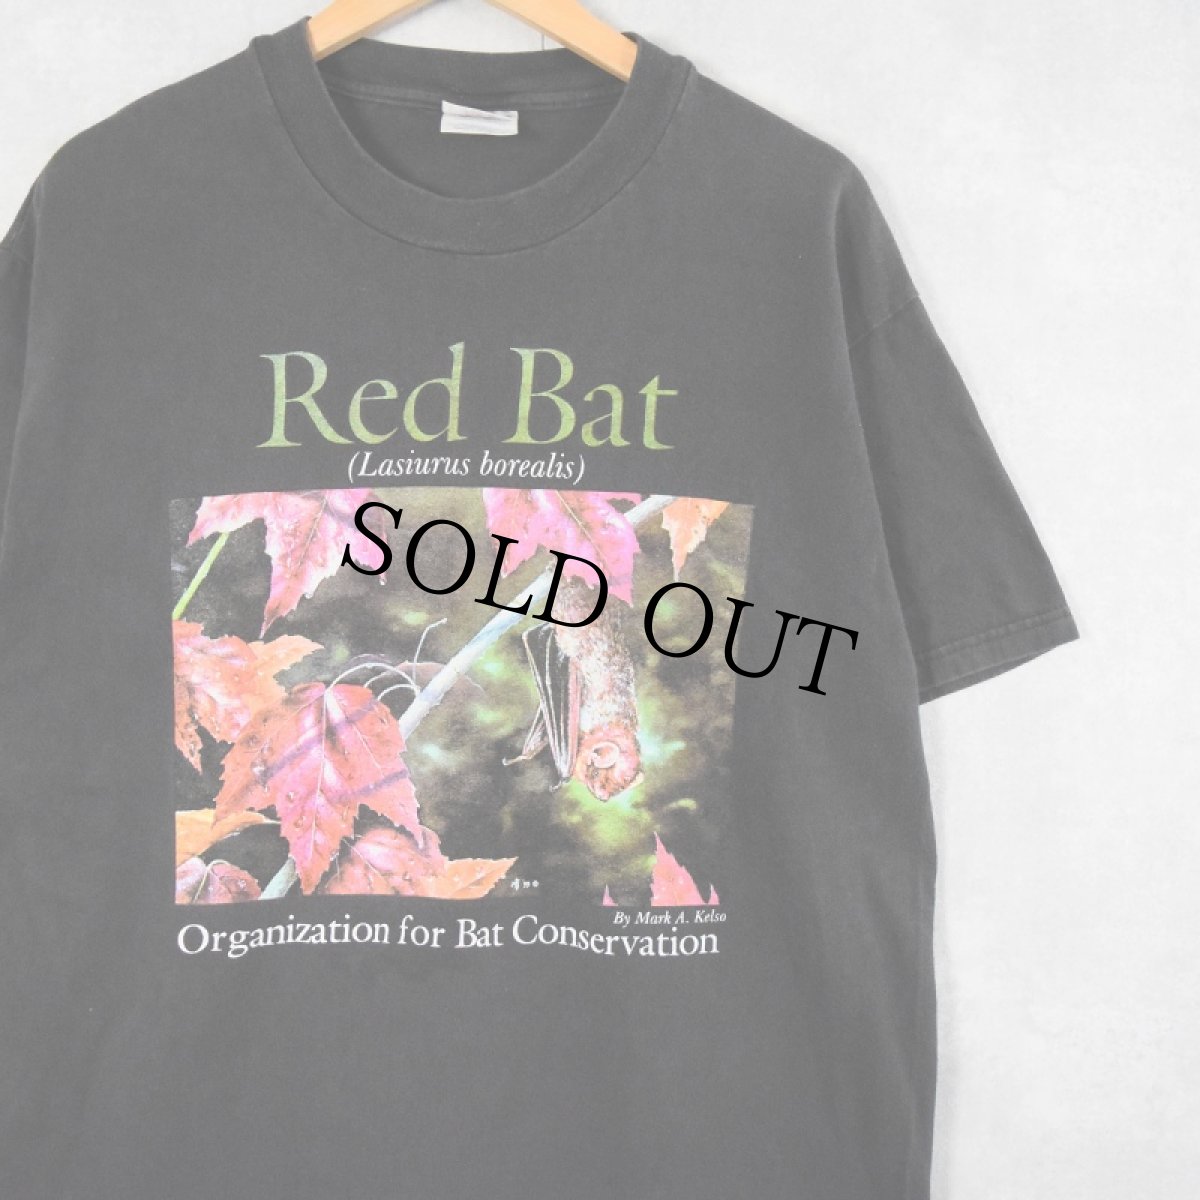 画像1: 90's "Red Bat" コウモリプリントTシャツ L (1)